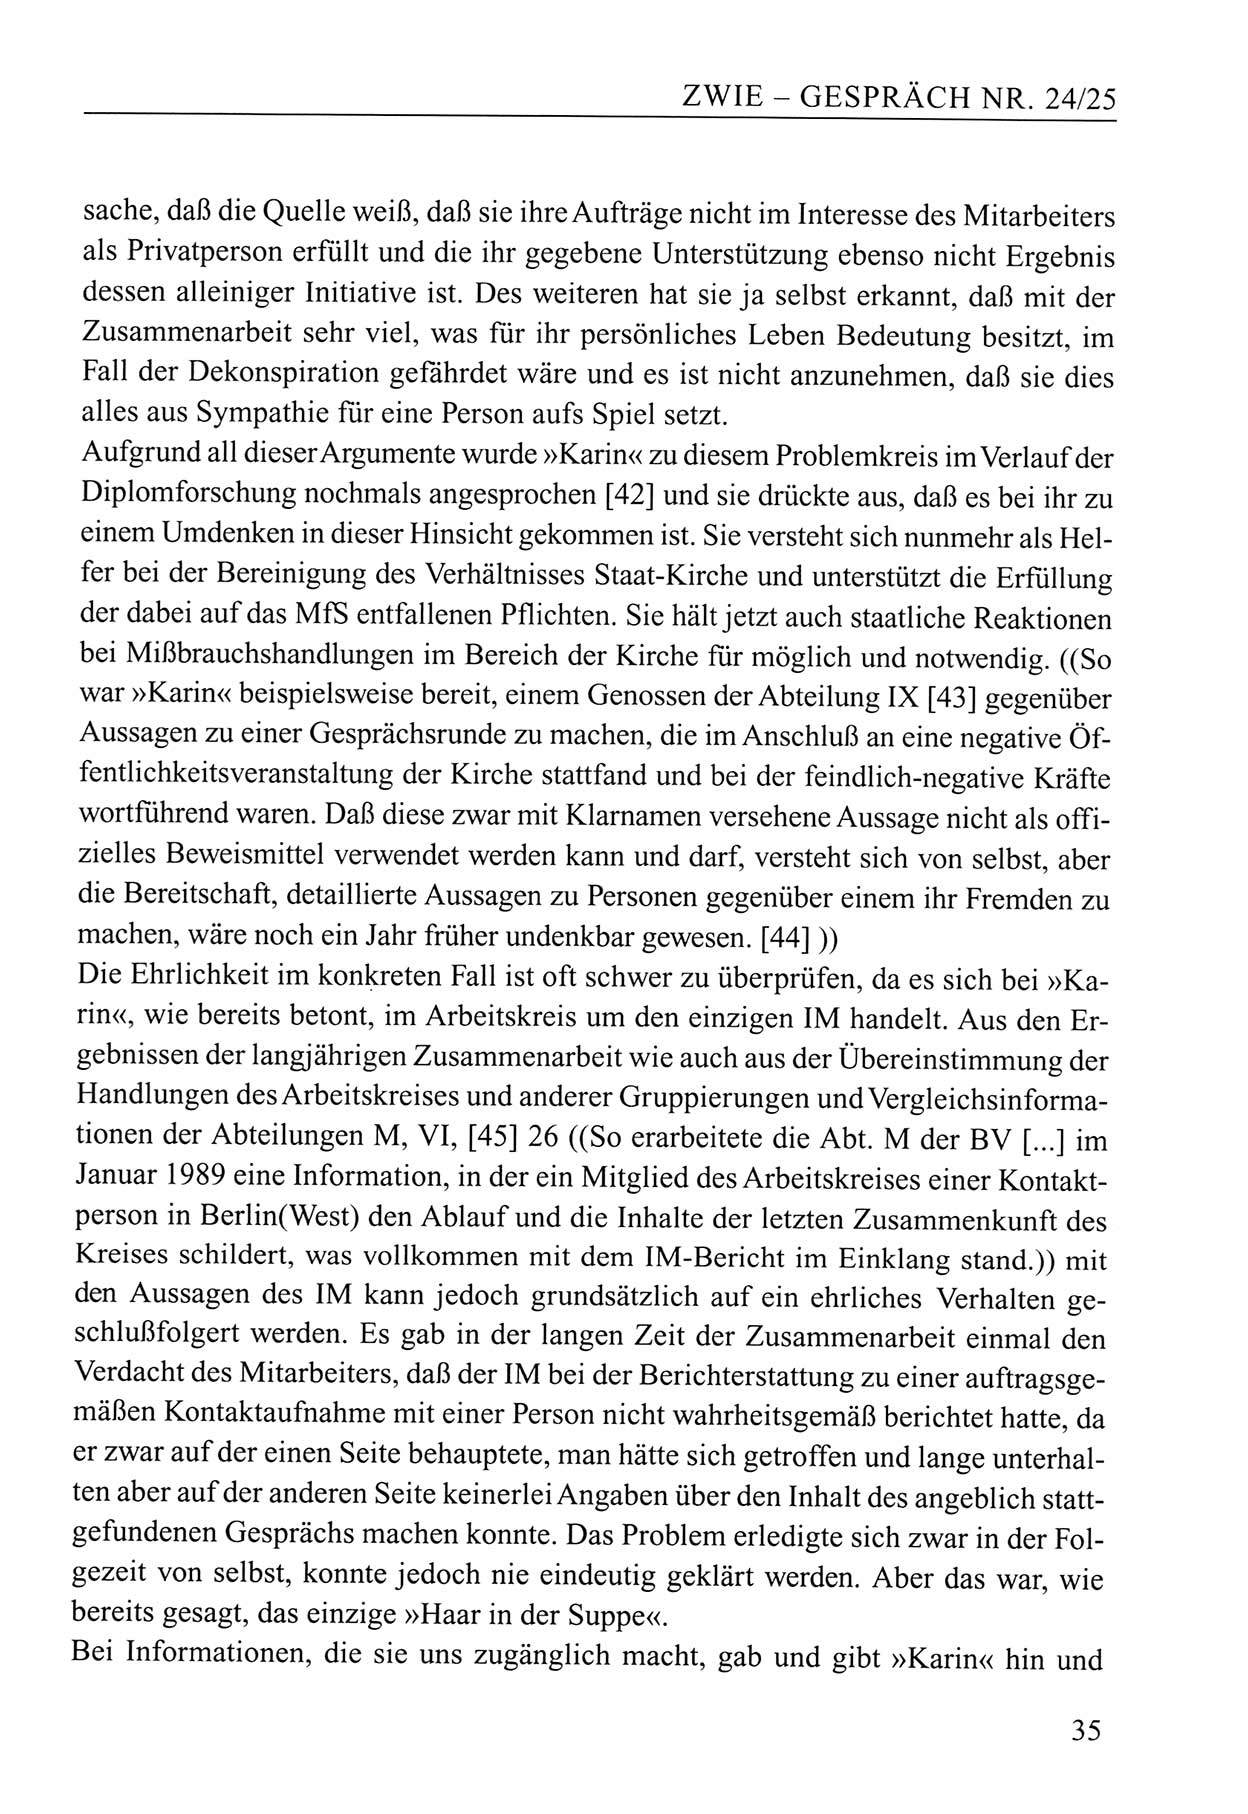 Zwie-Gespräch, Beiträge zum Umgang mit der Staatssicherheits-Vergangenheit [Deutsche Demokratische Republik (DDR)], Ausgabe Nr. 24/25, Berlin 1994, Seite 35 (Zwie-Gespr. Ausg. 24/25 1994, S. 35)